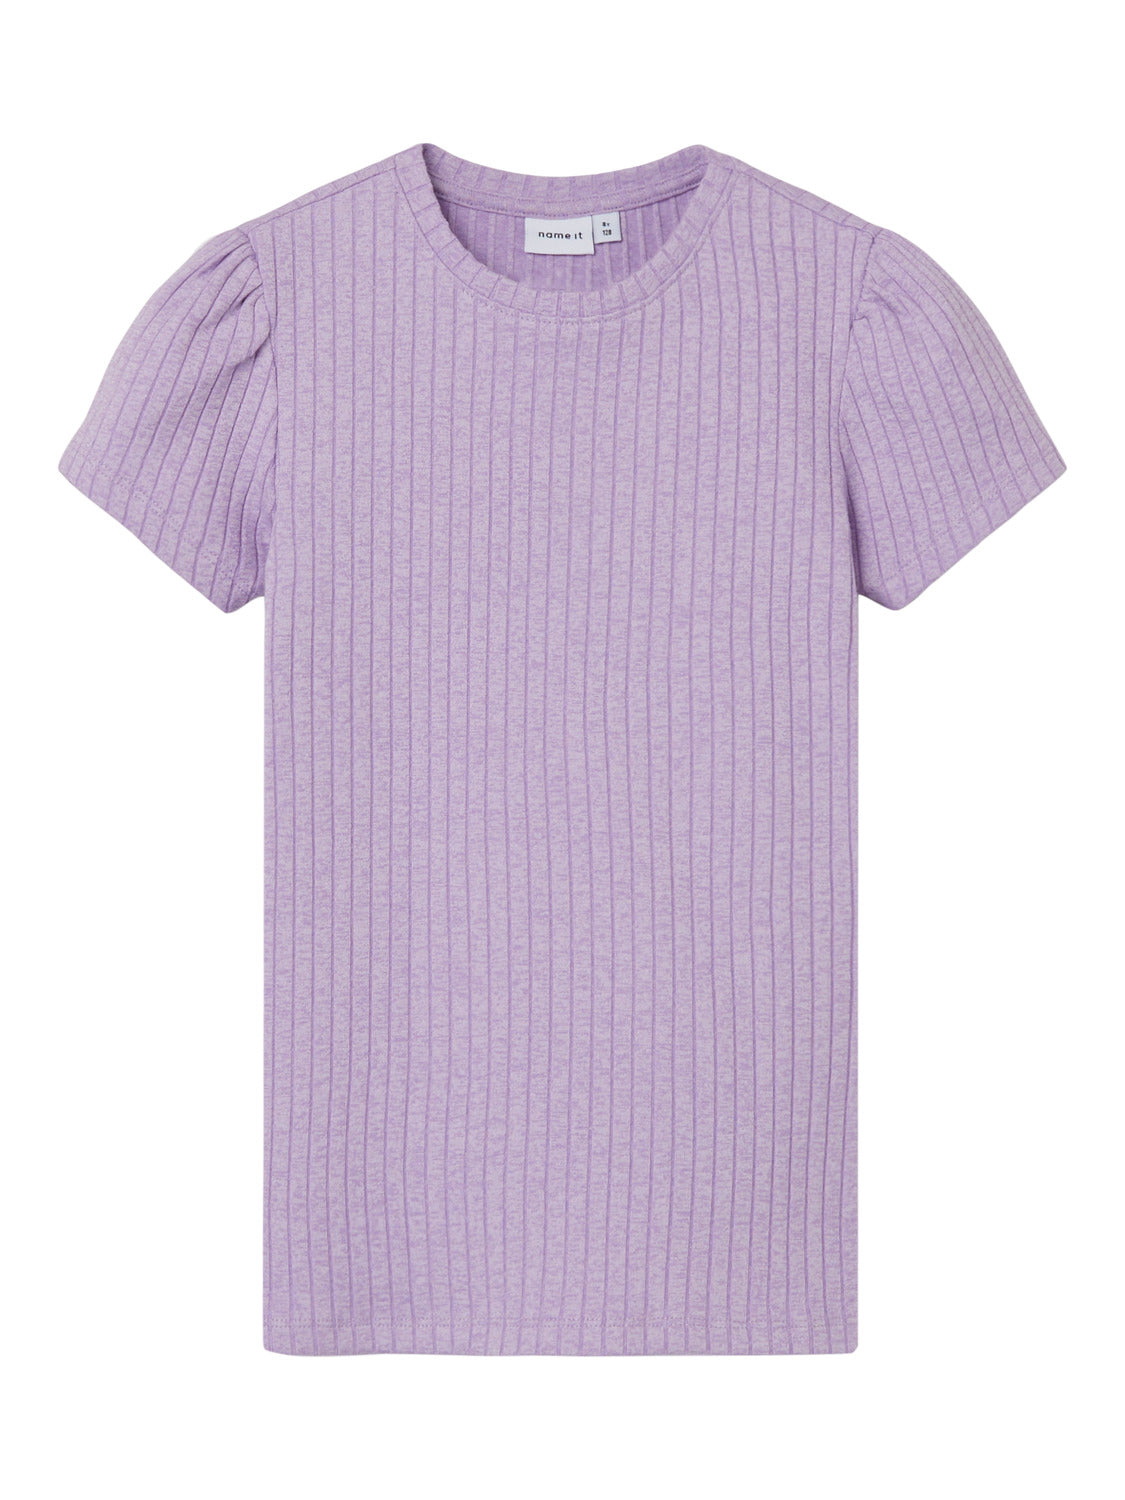 NKFNAJAA T-Shirts & Tops - Violet Tulle